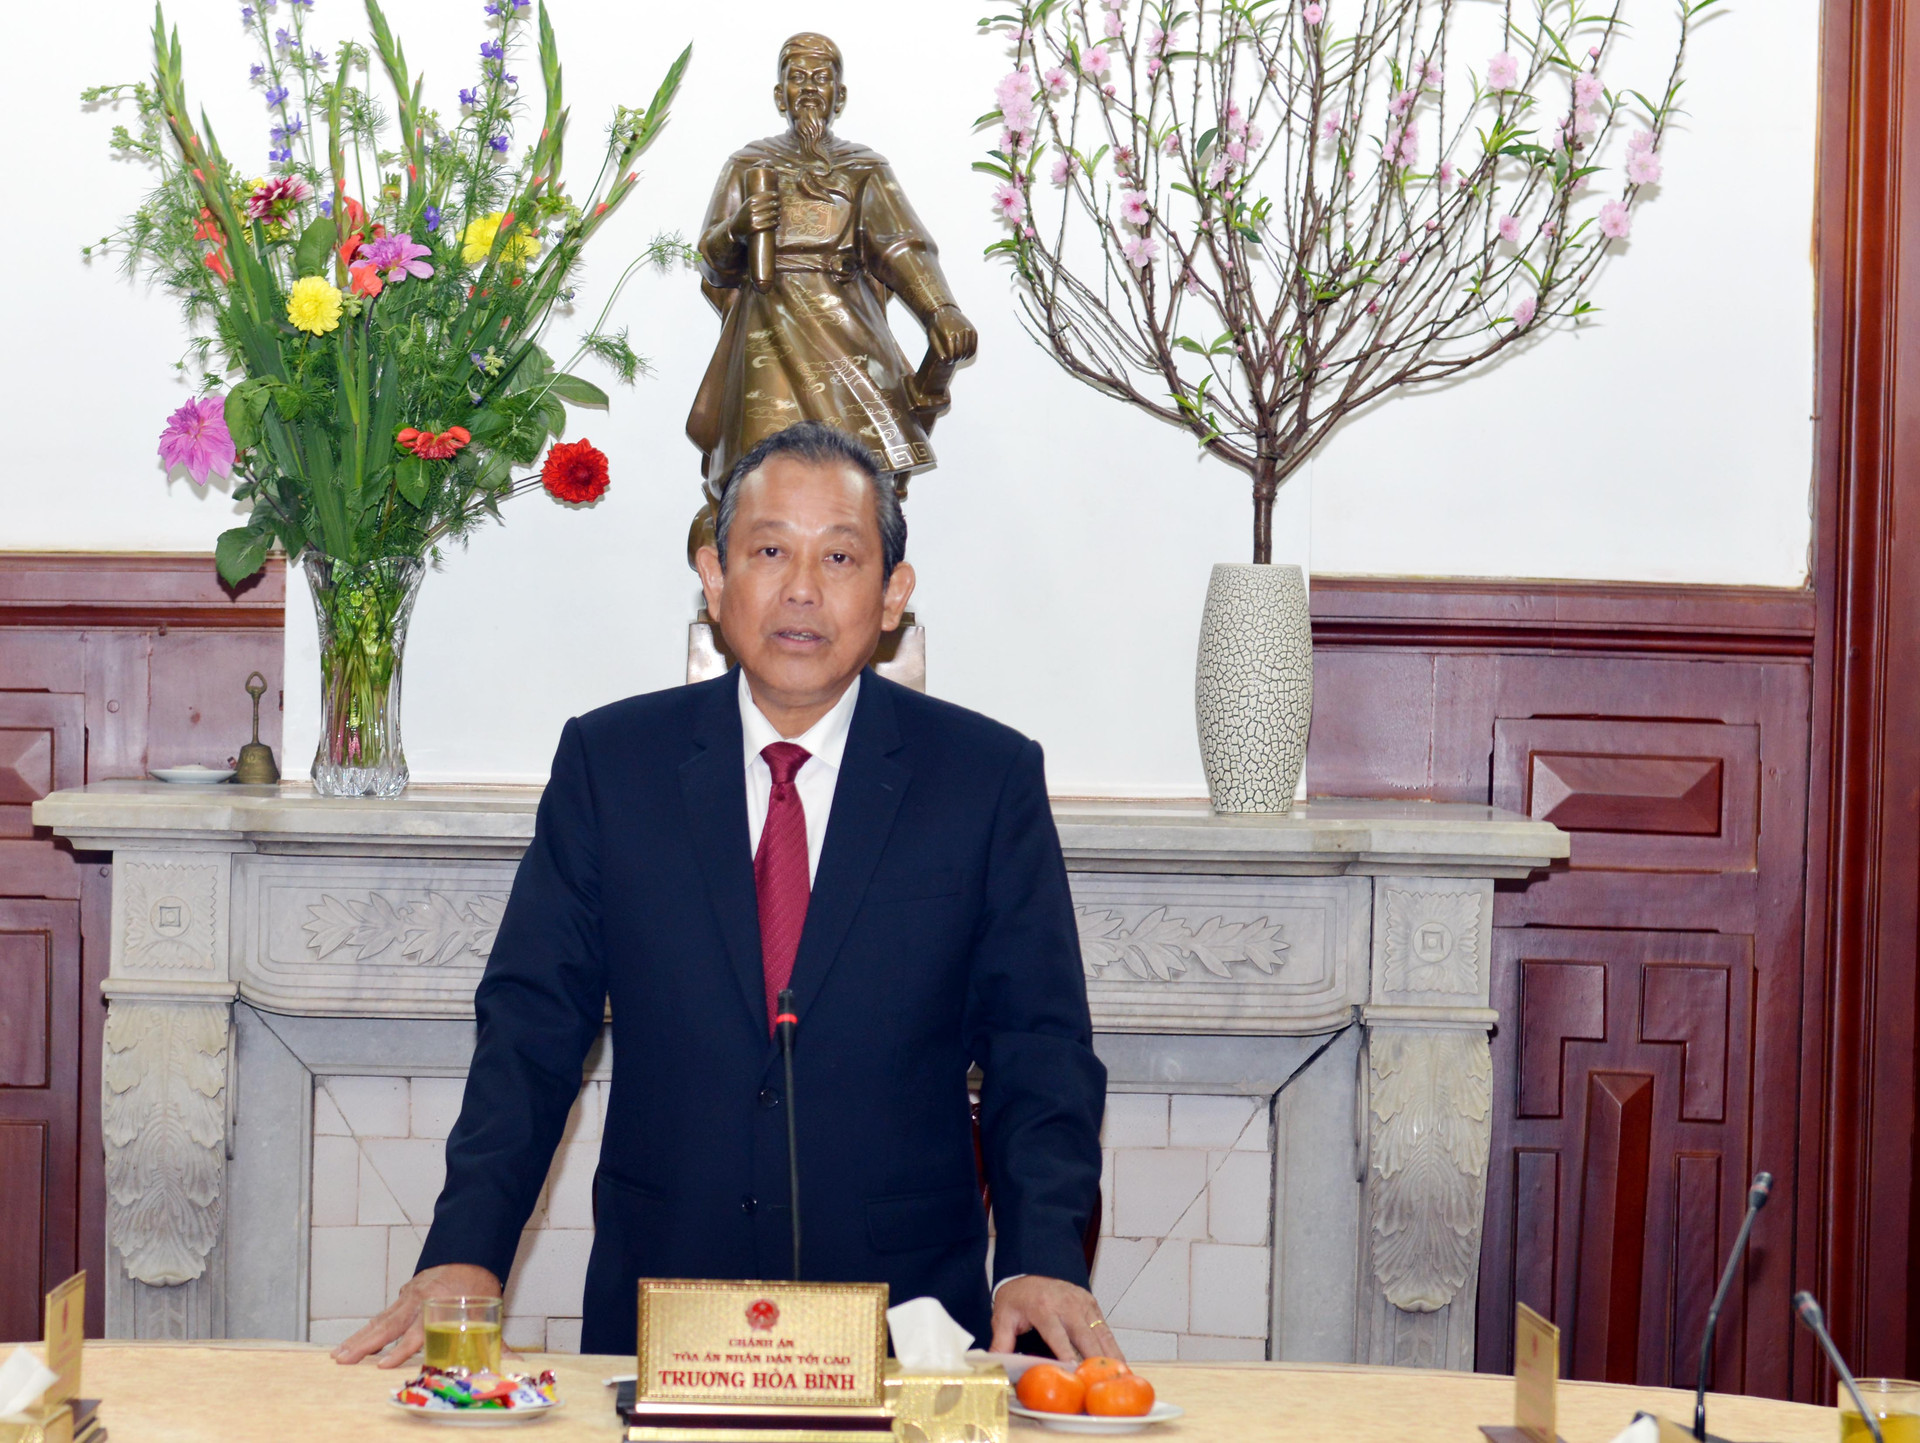 Ủy viên Bộ Chính trị, Chánh án TANDTC Trương Hòa Bình gặp mặt đầu Xuân các cán bộ chủ chốt TANDTC và TAQS Trung ương